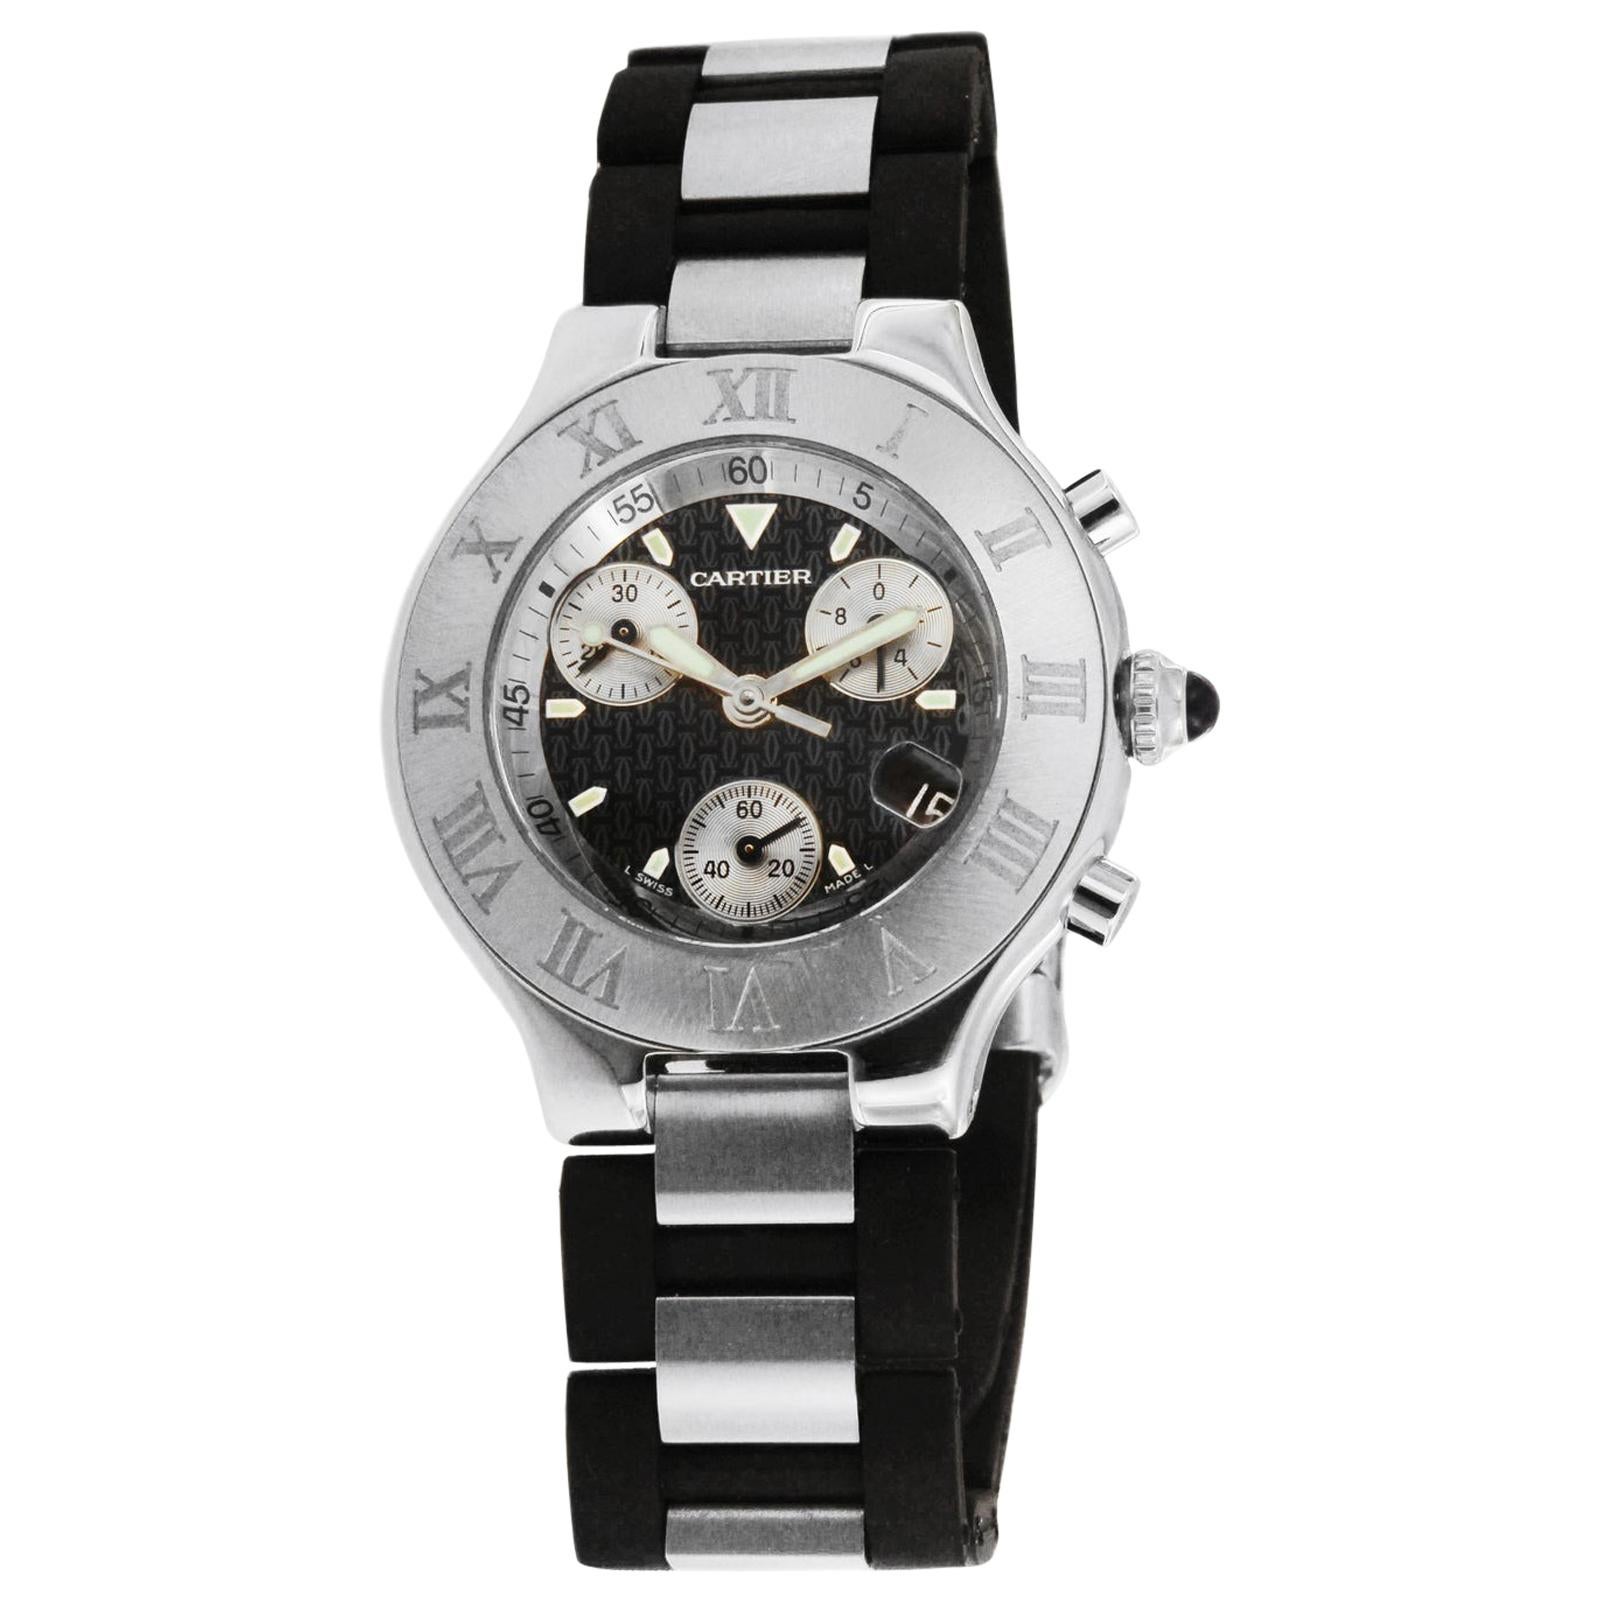 Cartier Chronoscaph 21 Stainless Steel Watch W10125U2